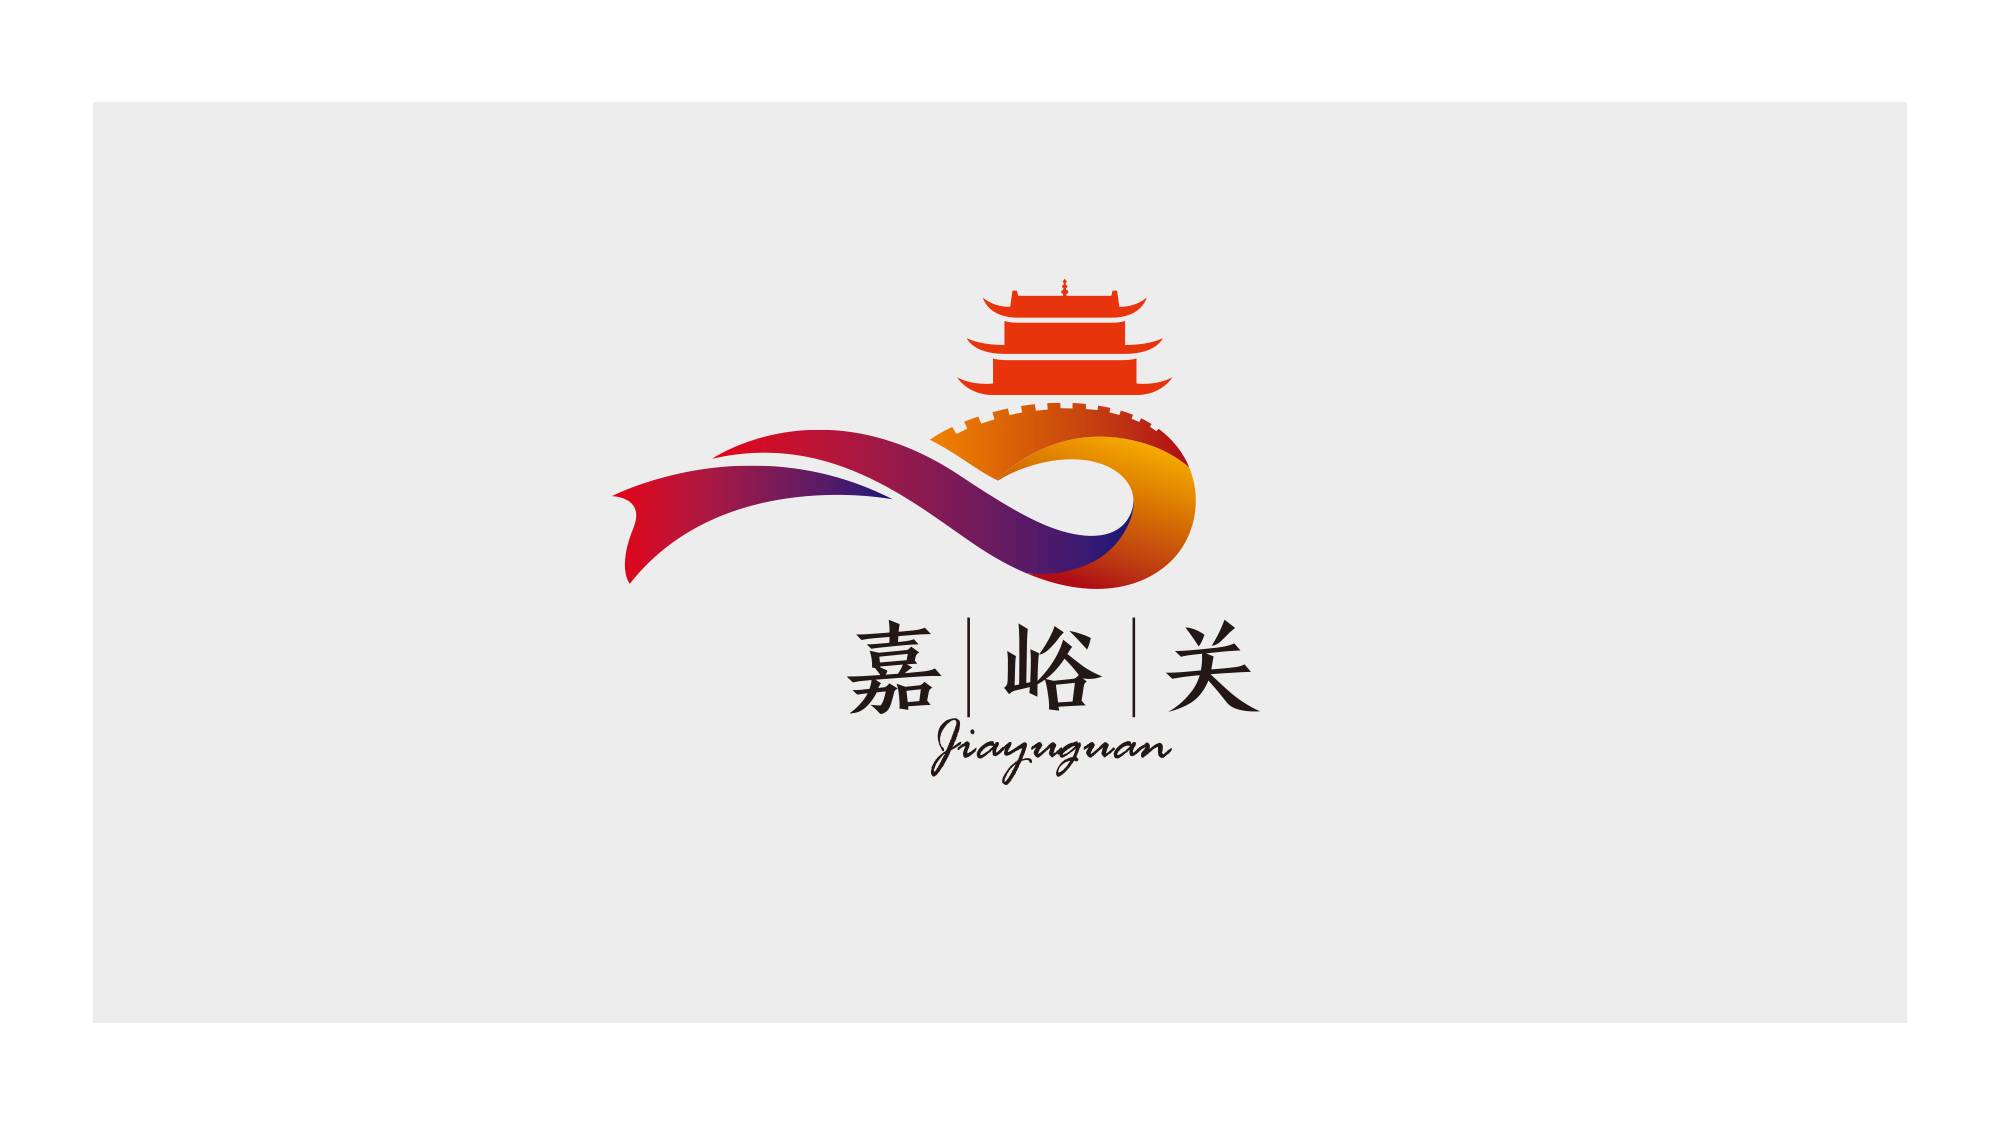 嘉峪关市logo